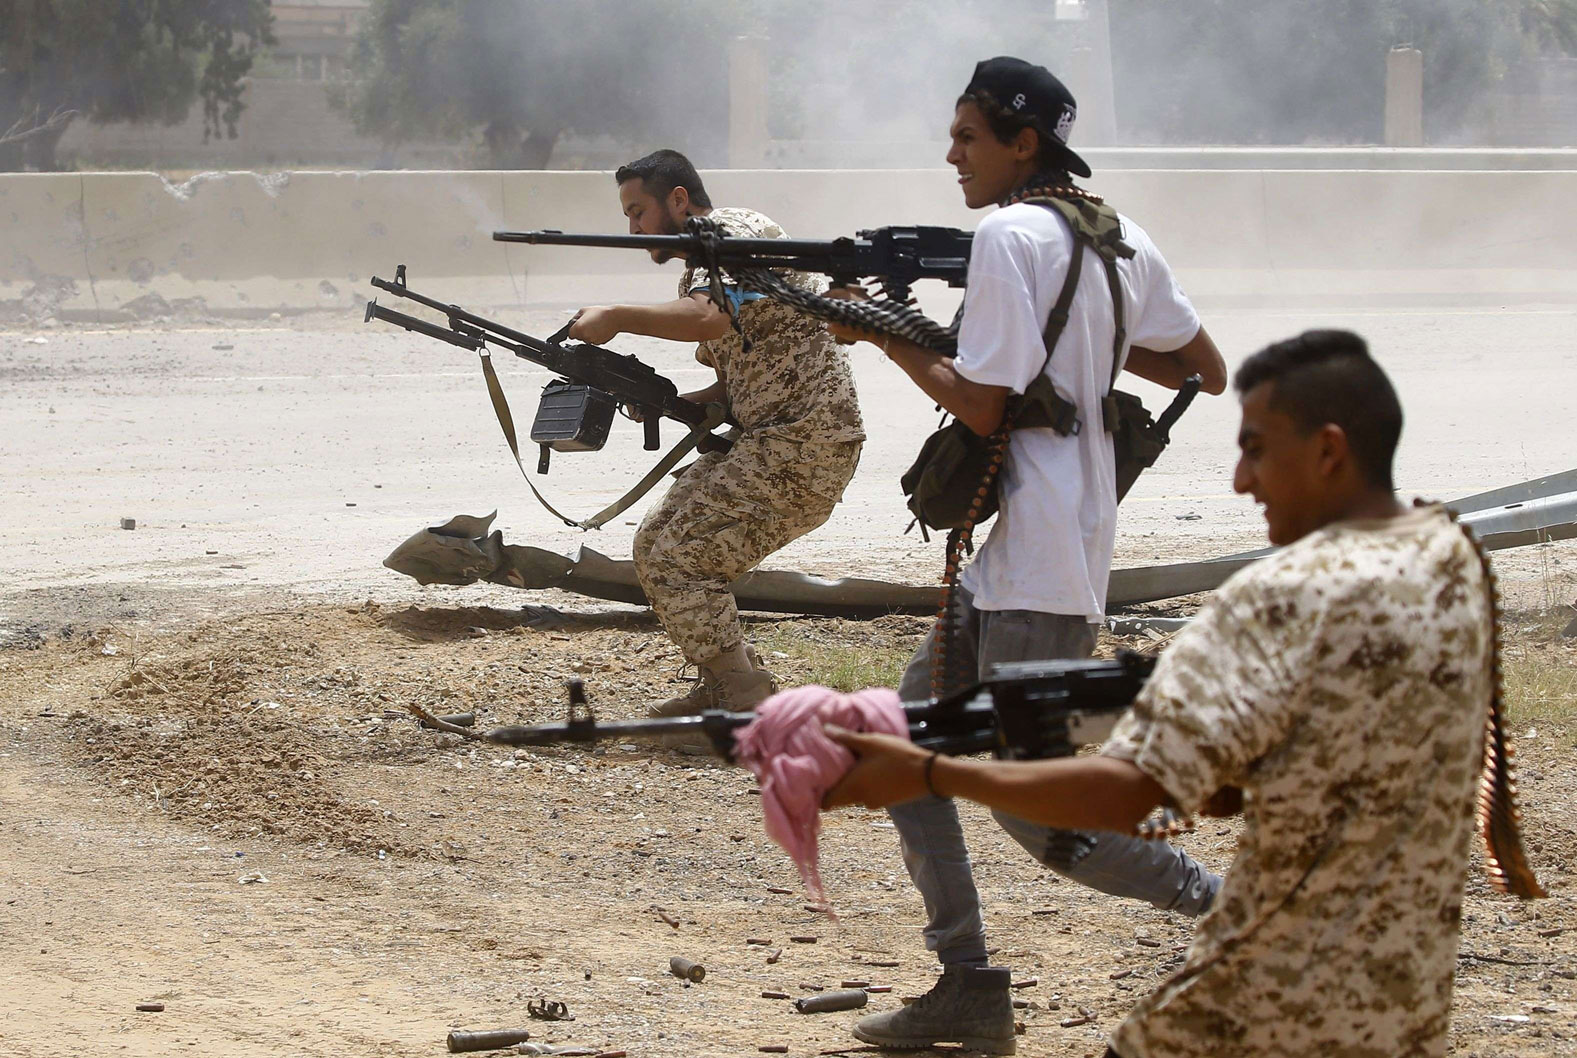 القيادة العامة للجيش الوطني الليبي اتهمت مرارا أنقرة بتسليح ميليشيات متطرفة